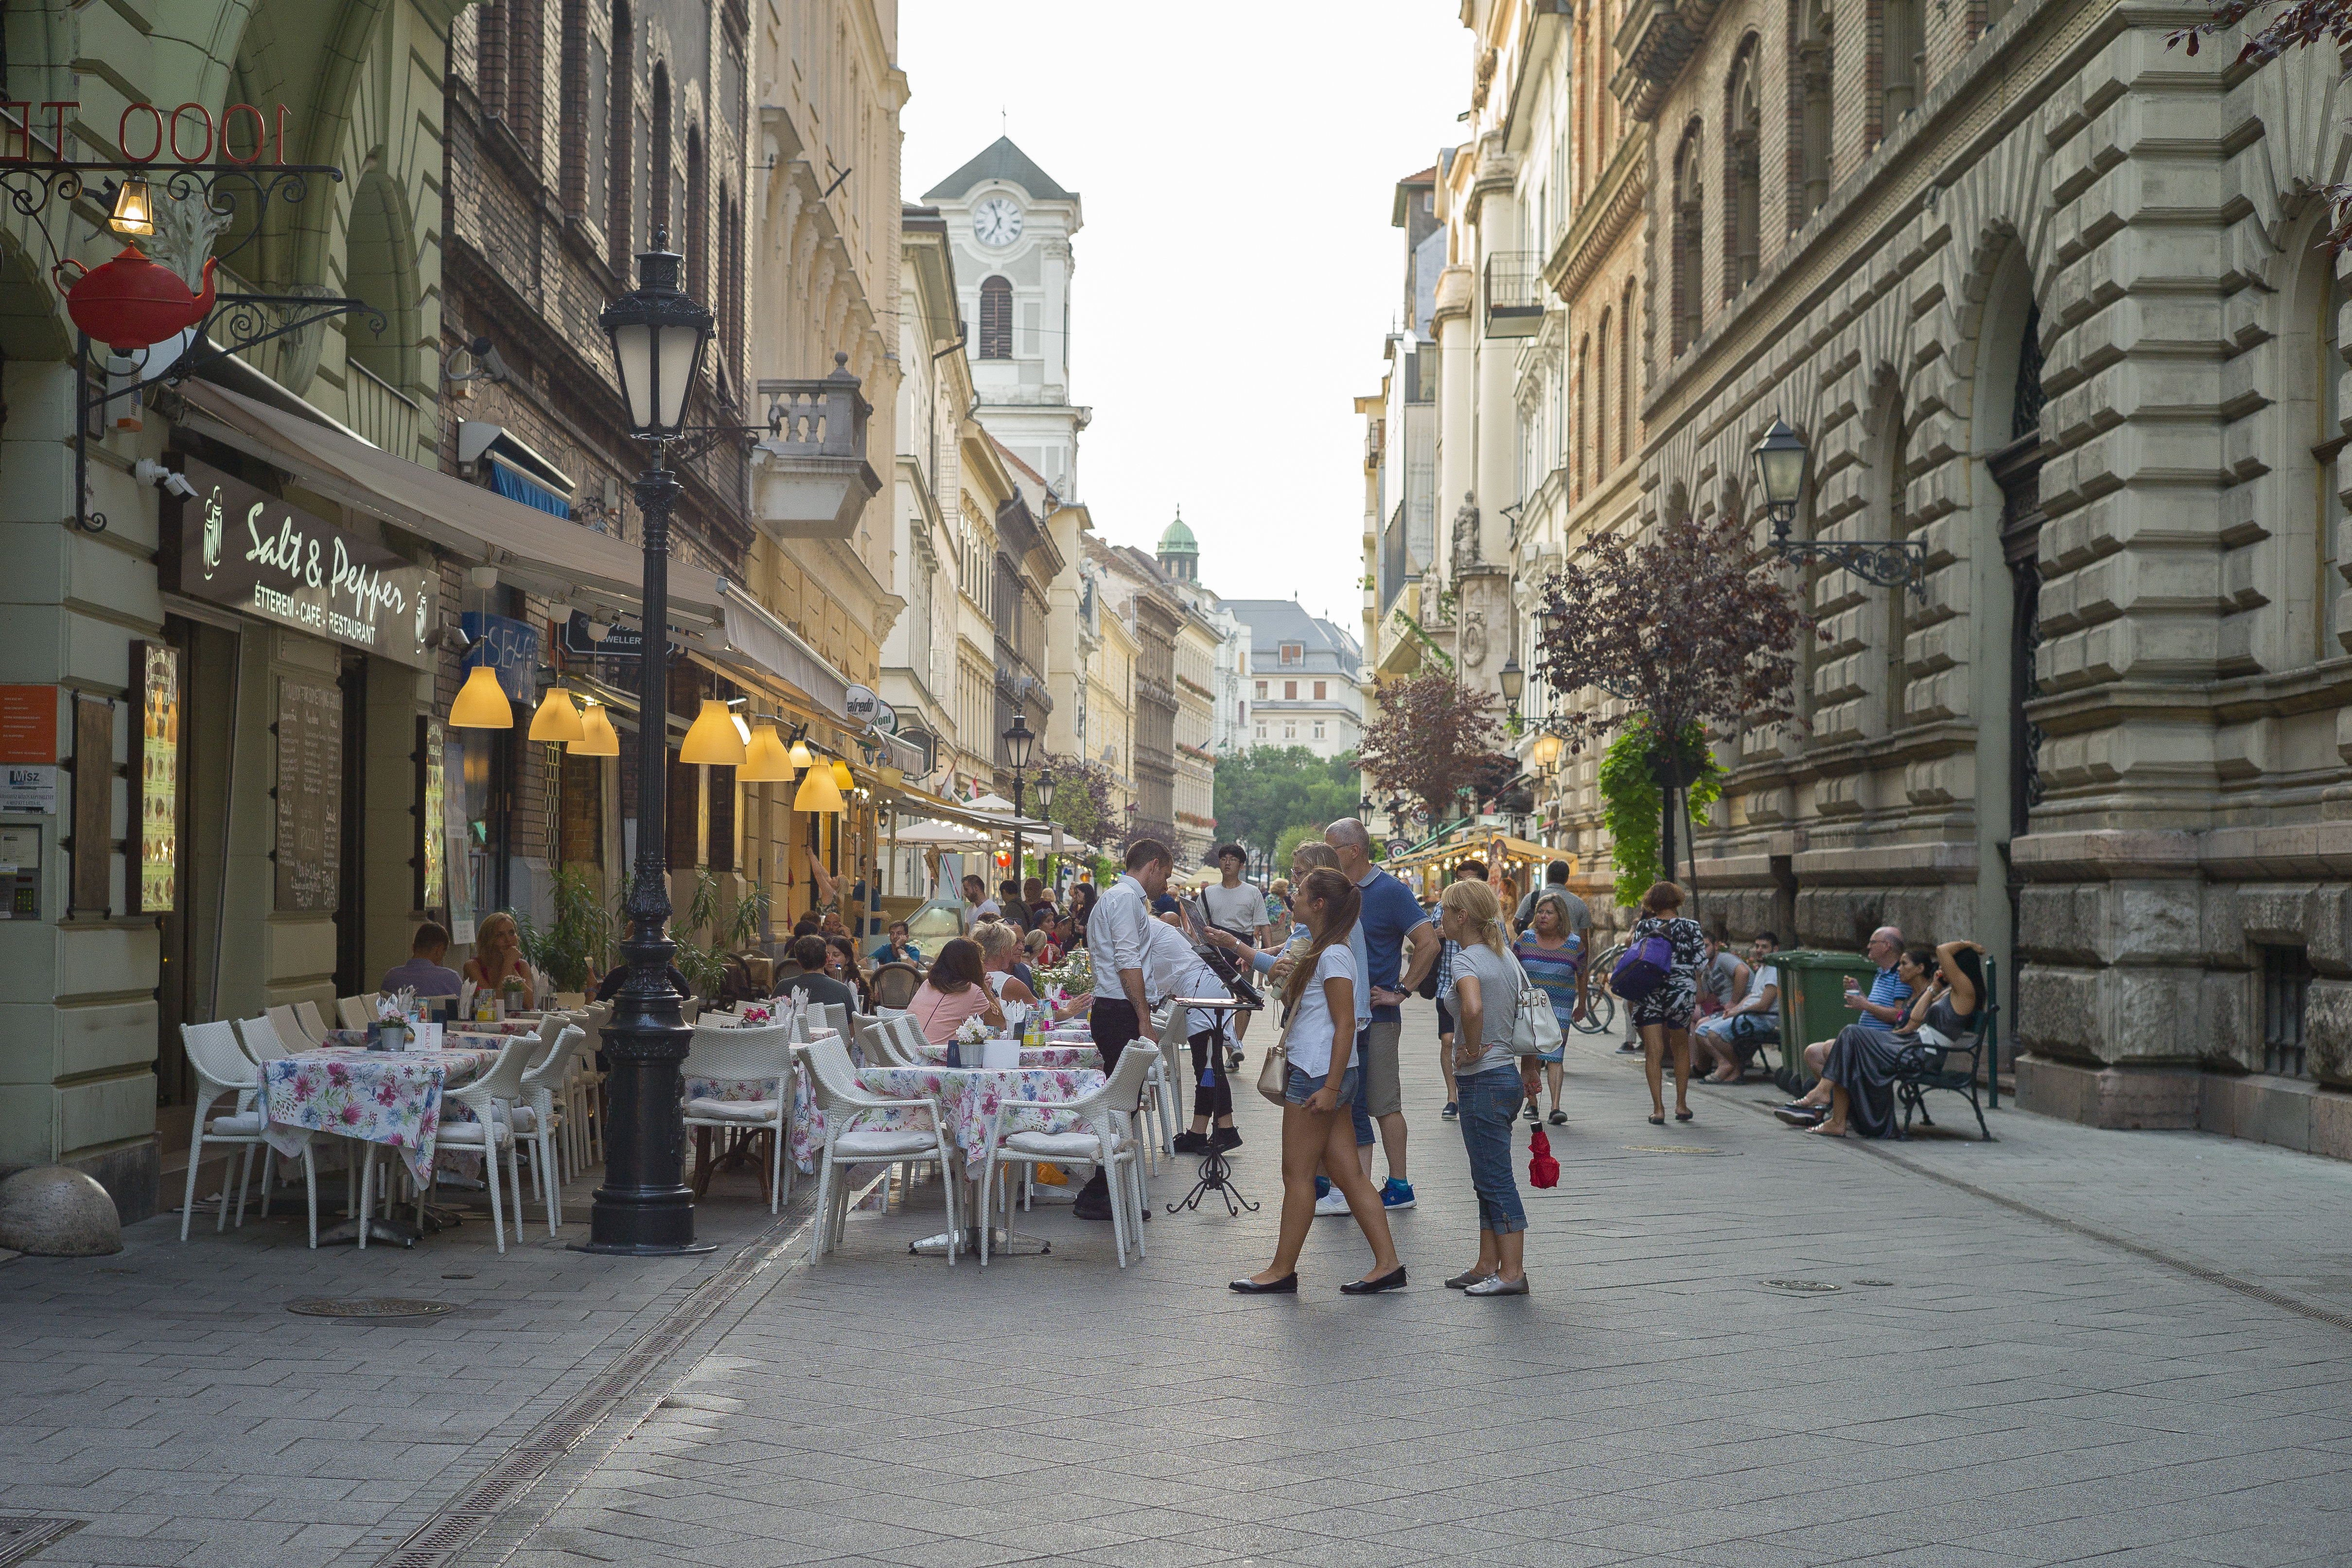 Melyik híres budapesti utca látható a képen?